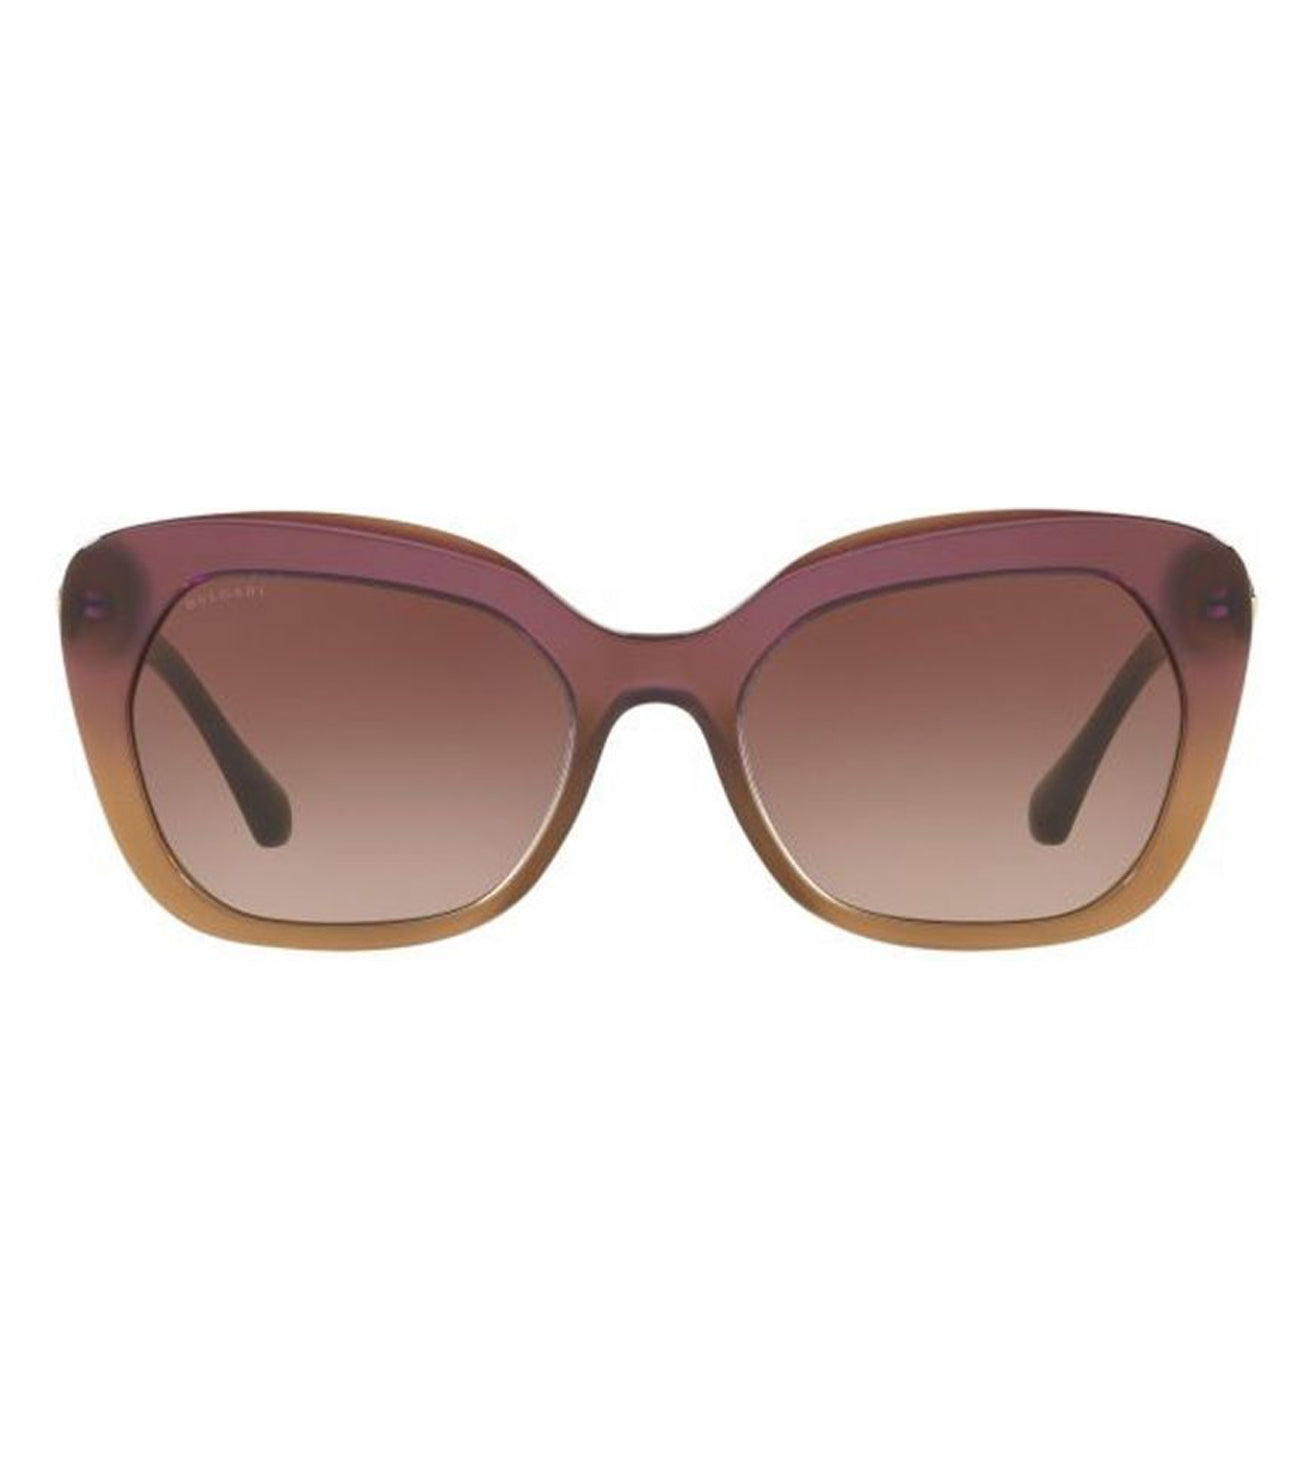 Bvlgari Women's Pink Cat-eye Sunglasses